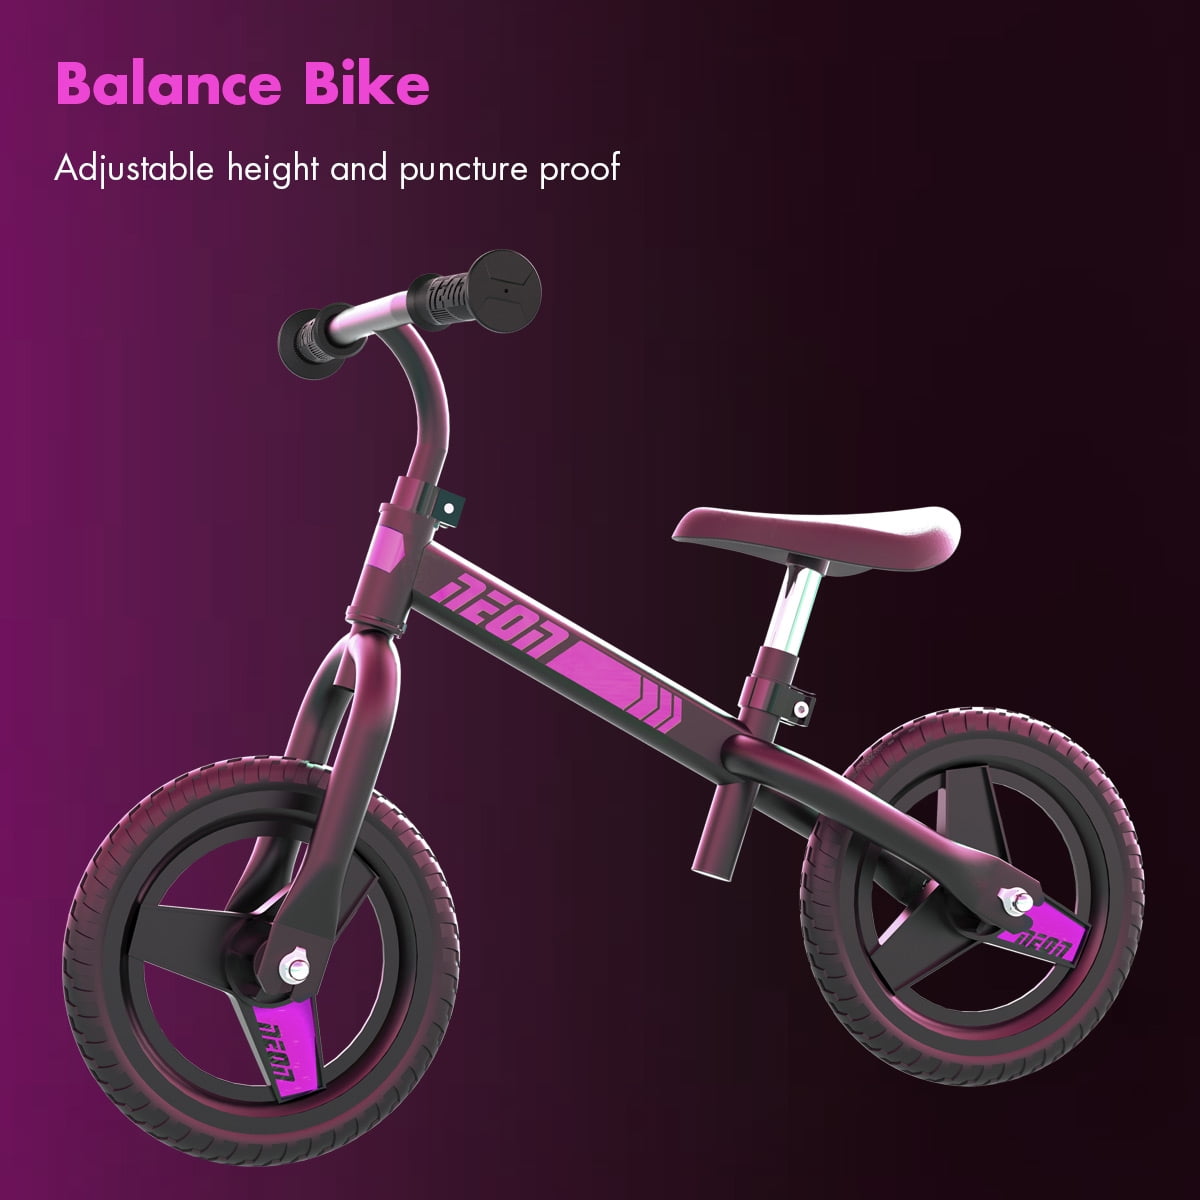 walmart balance bike $15